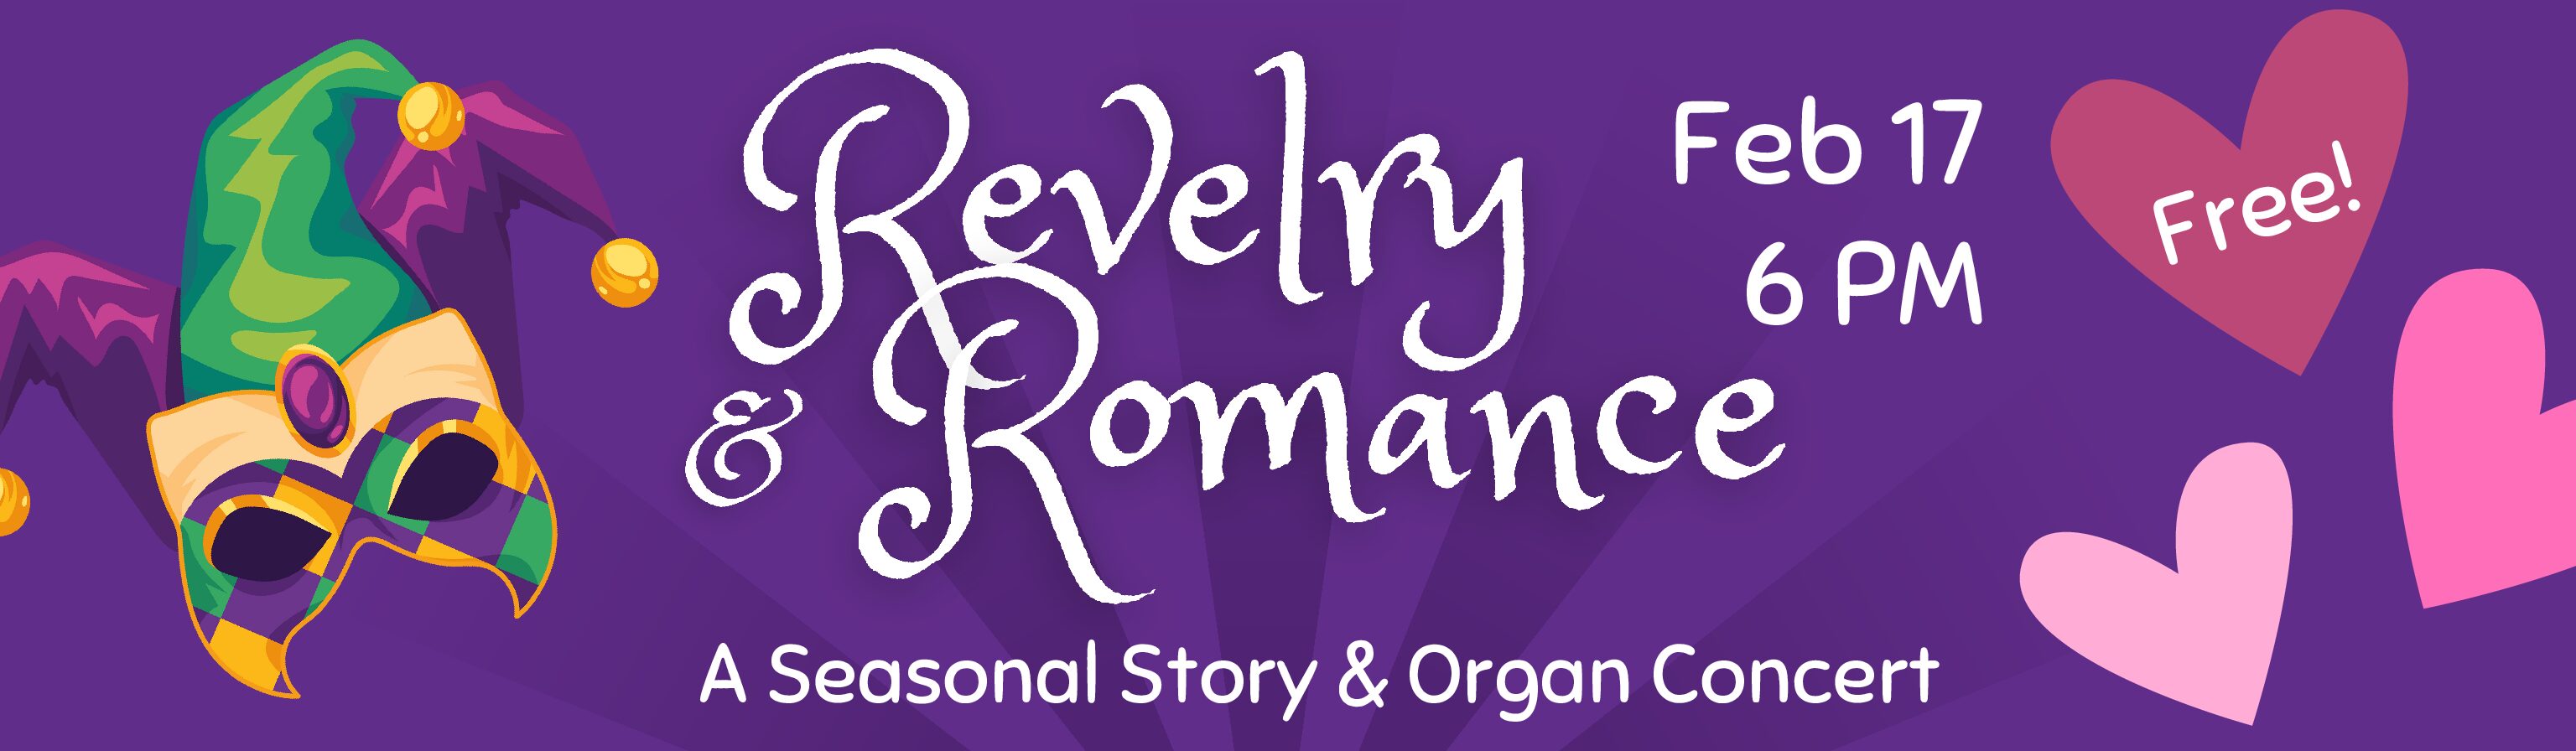 revelry romance website banner v2 (1)